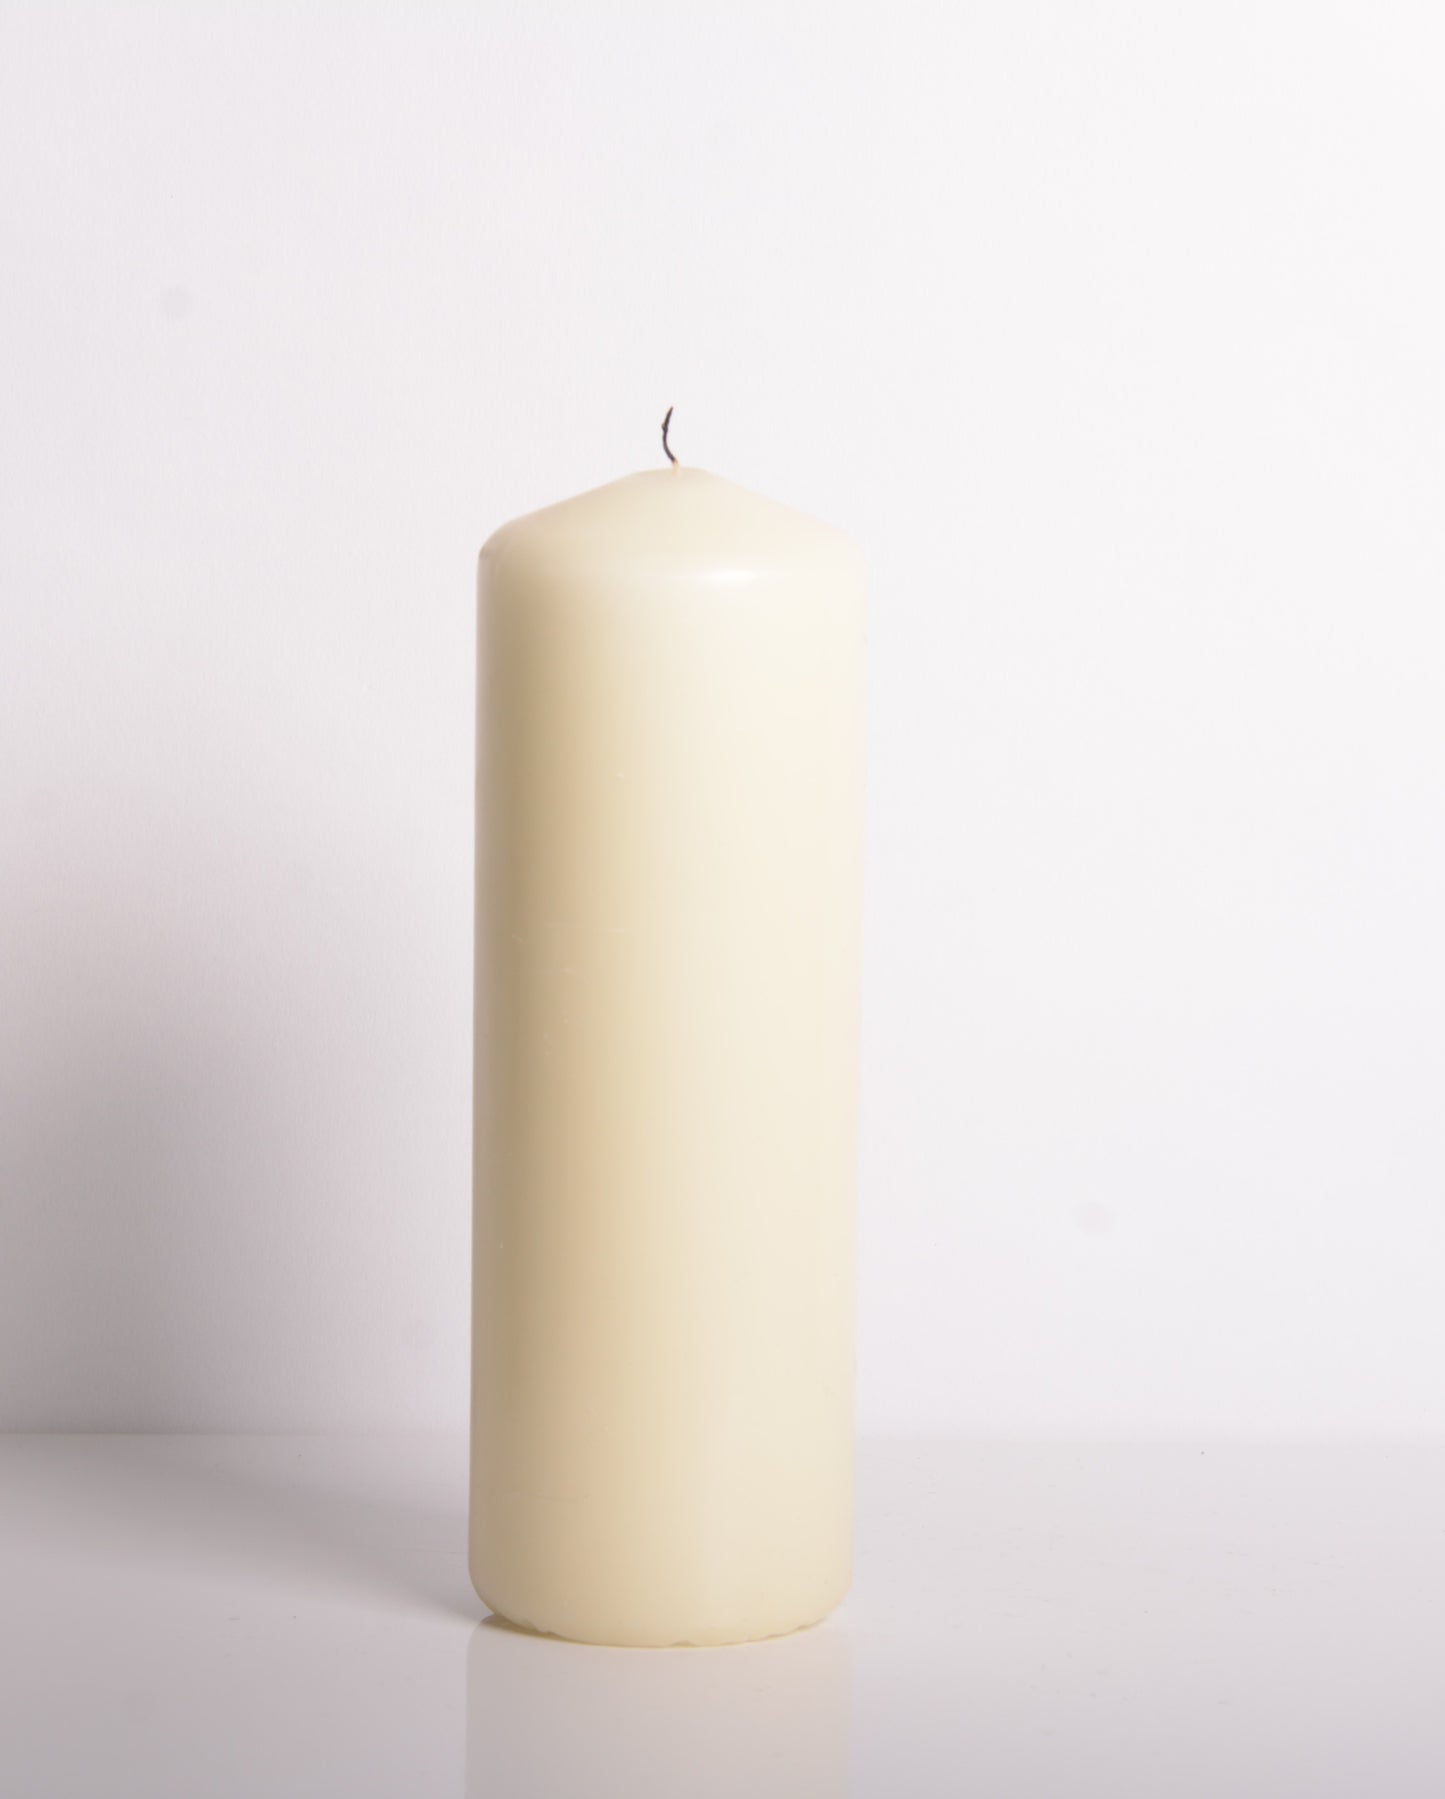 Tutu Pele Candle in Ivory